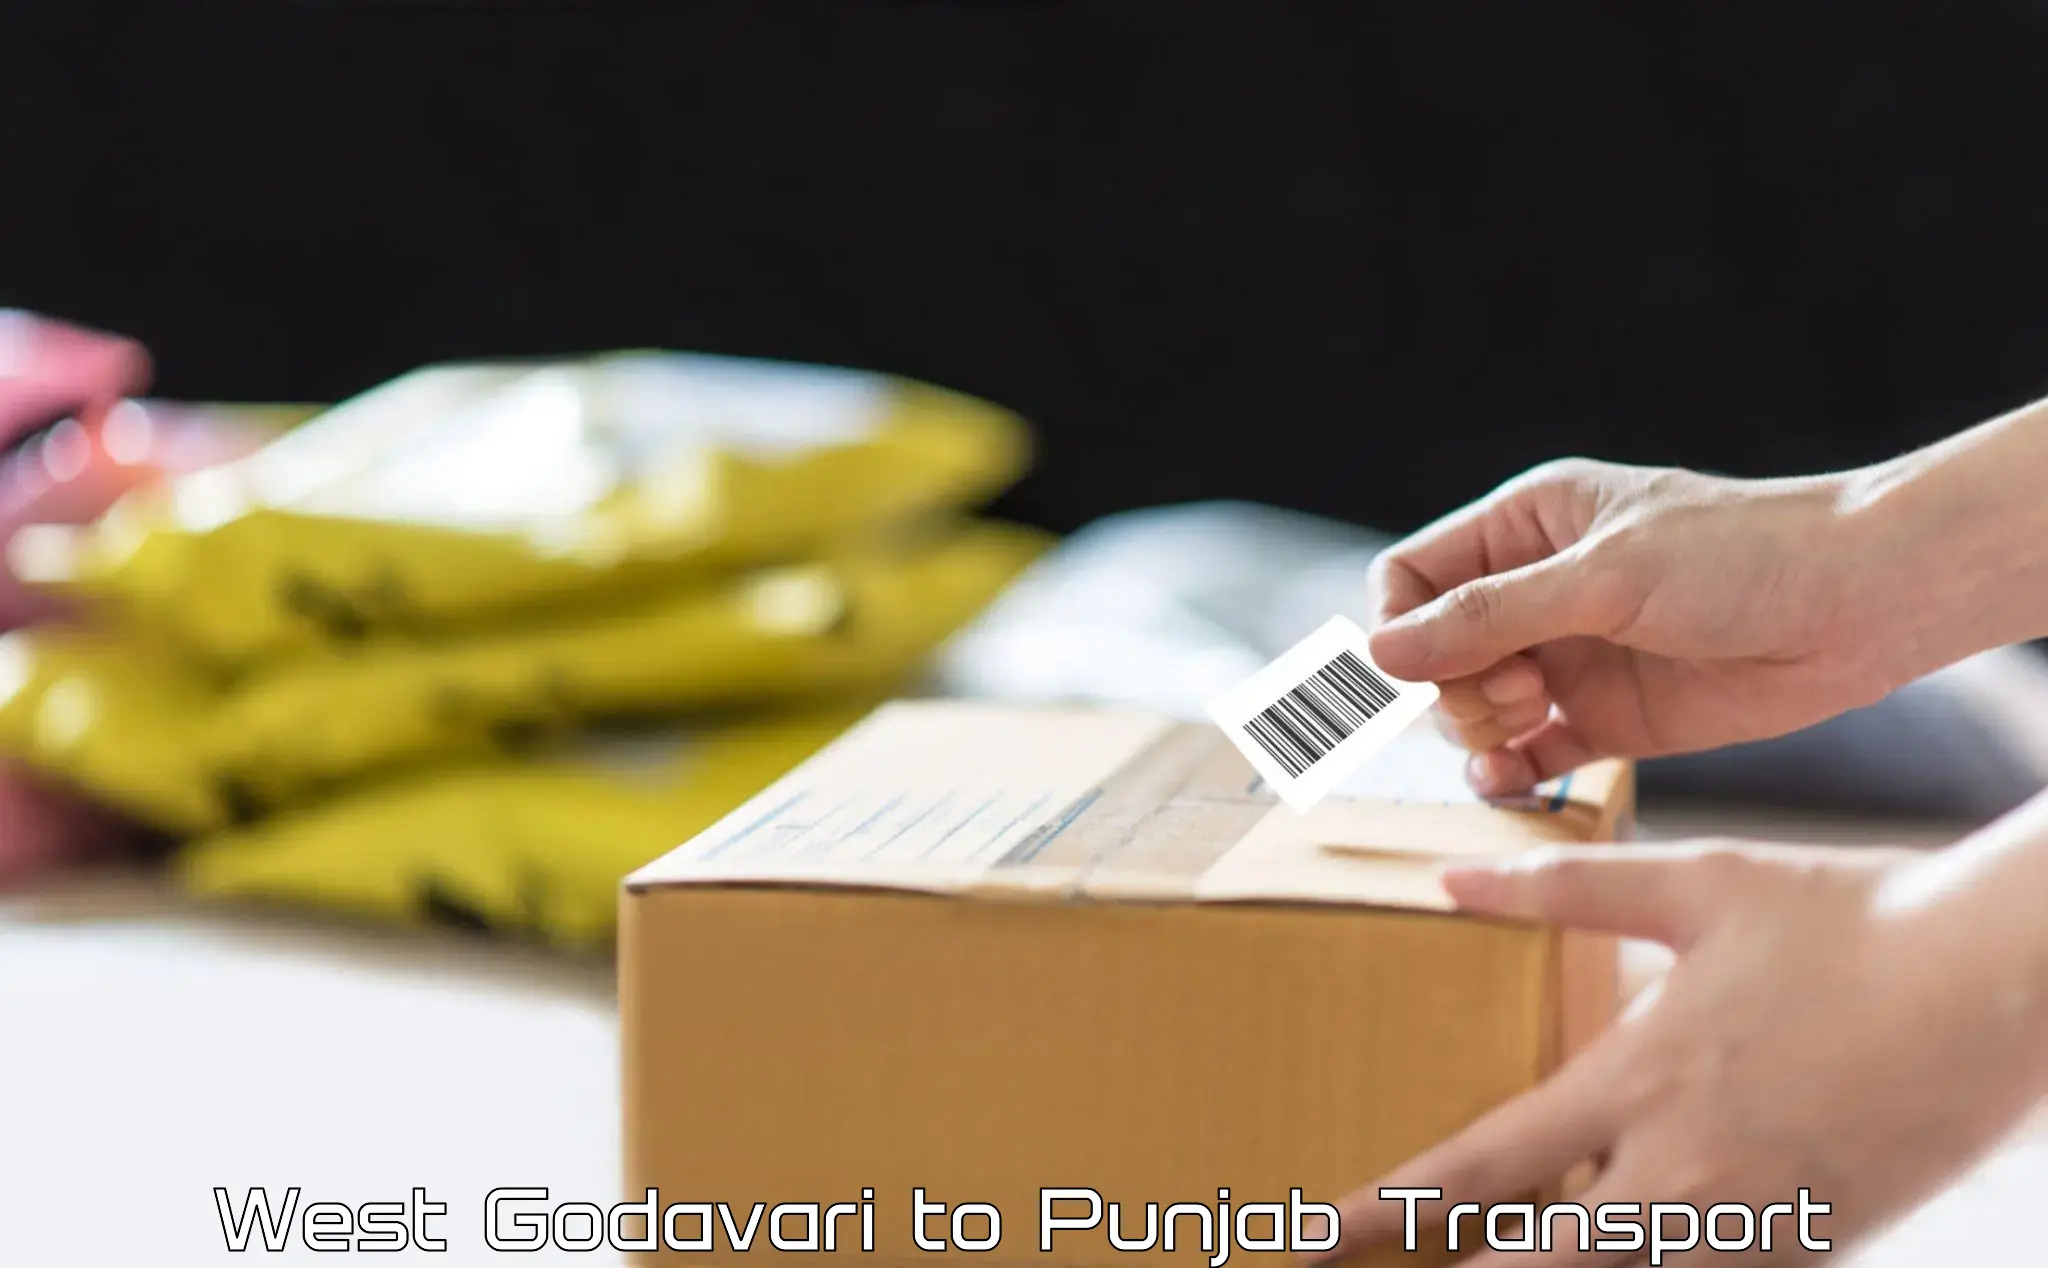 Parcel transport services West Godavari to Punjab